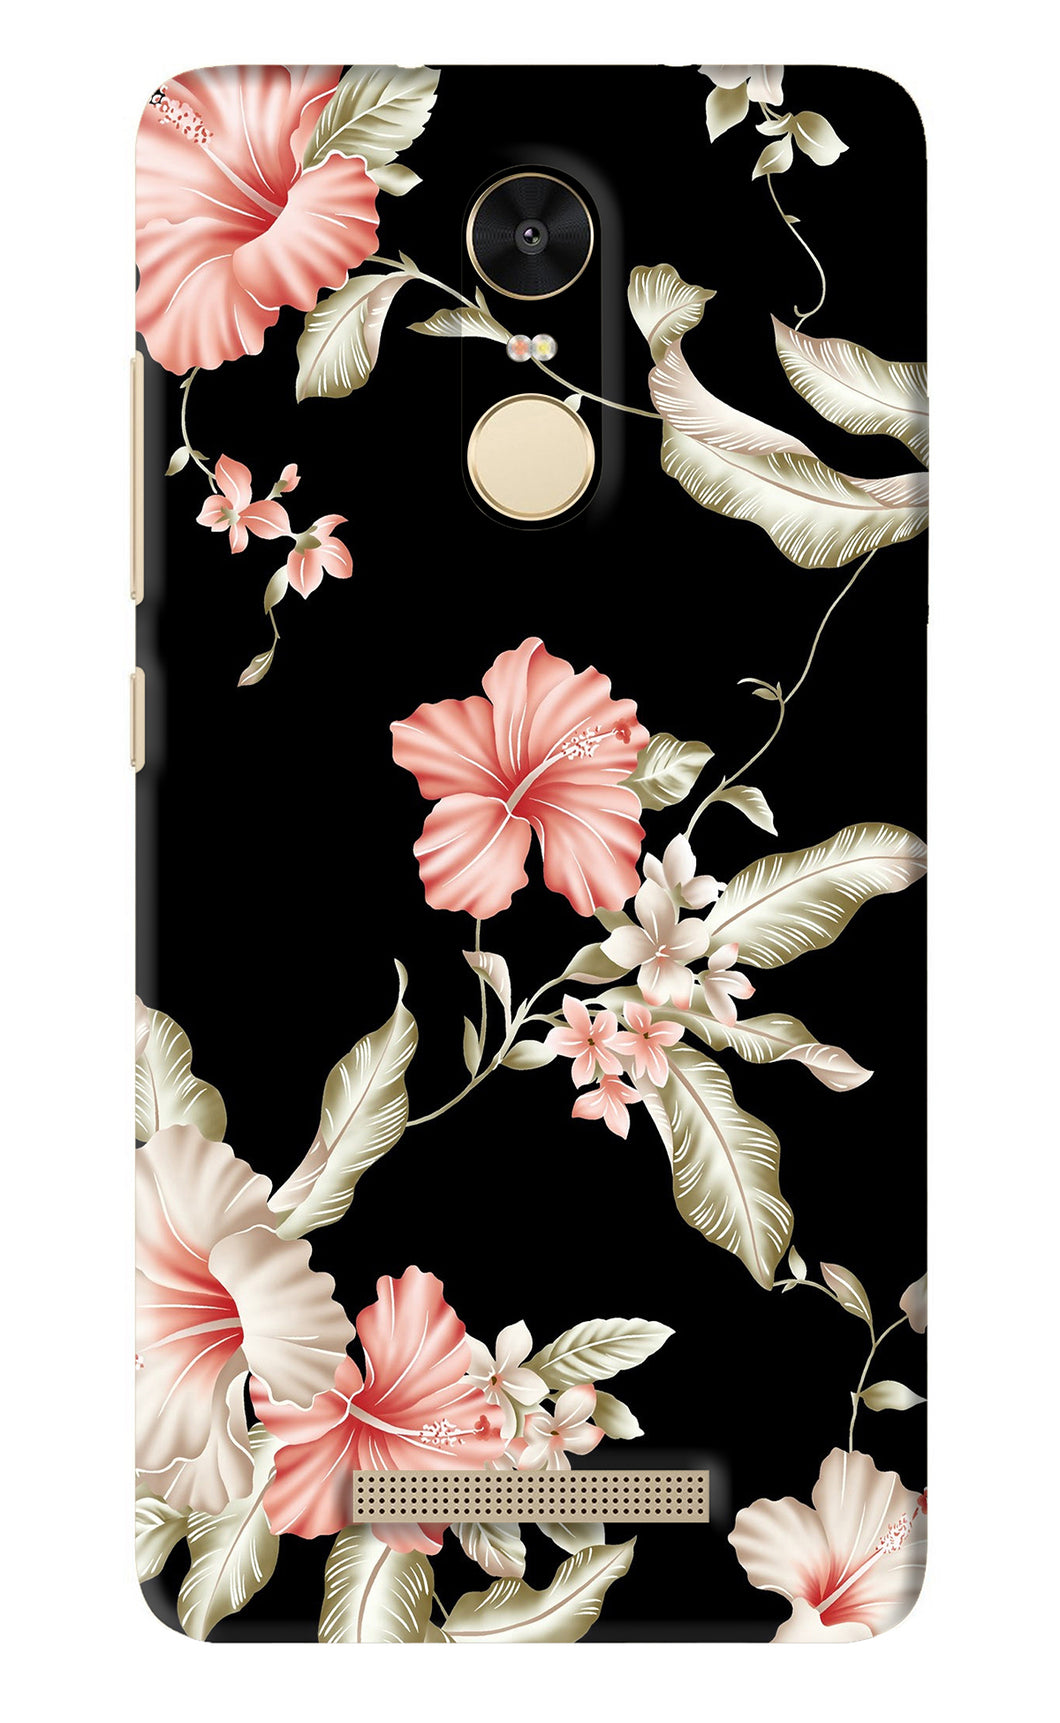 Flowers 2 Xiaomi Redmi Note 3 Back Skin Wrap